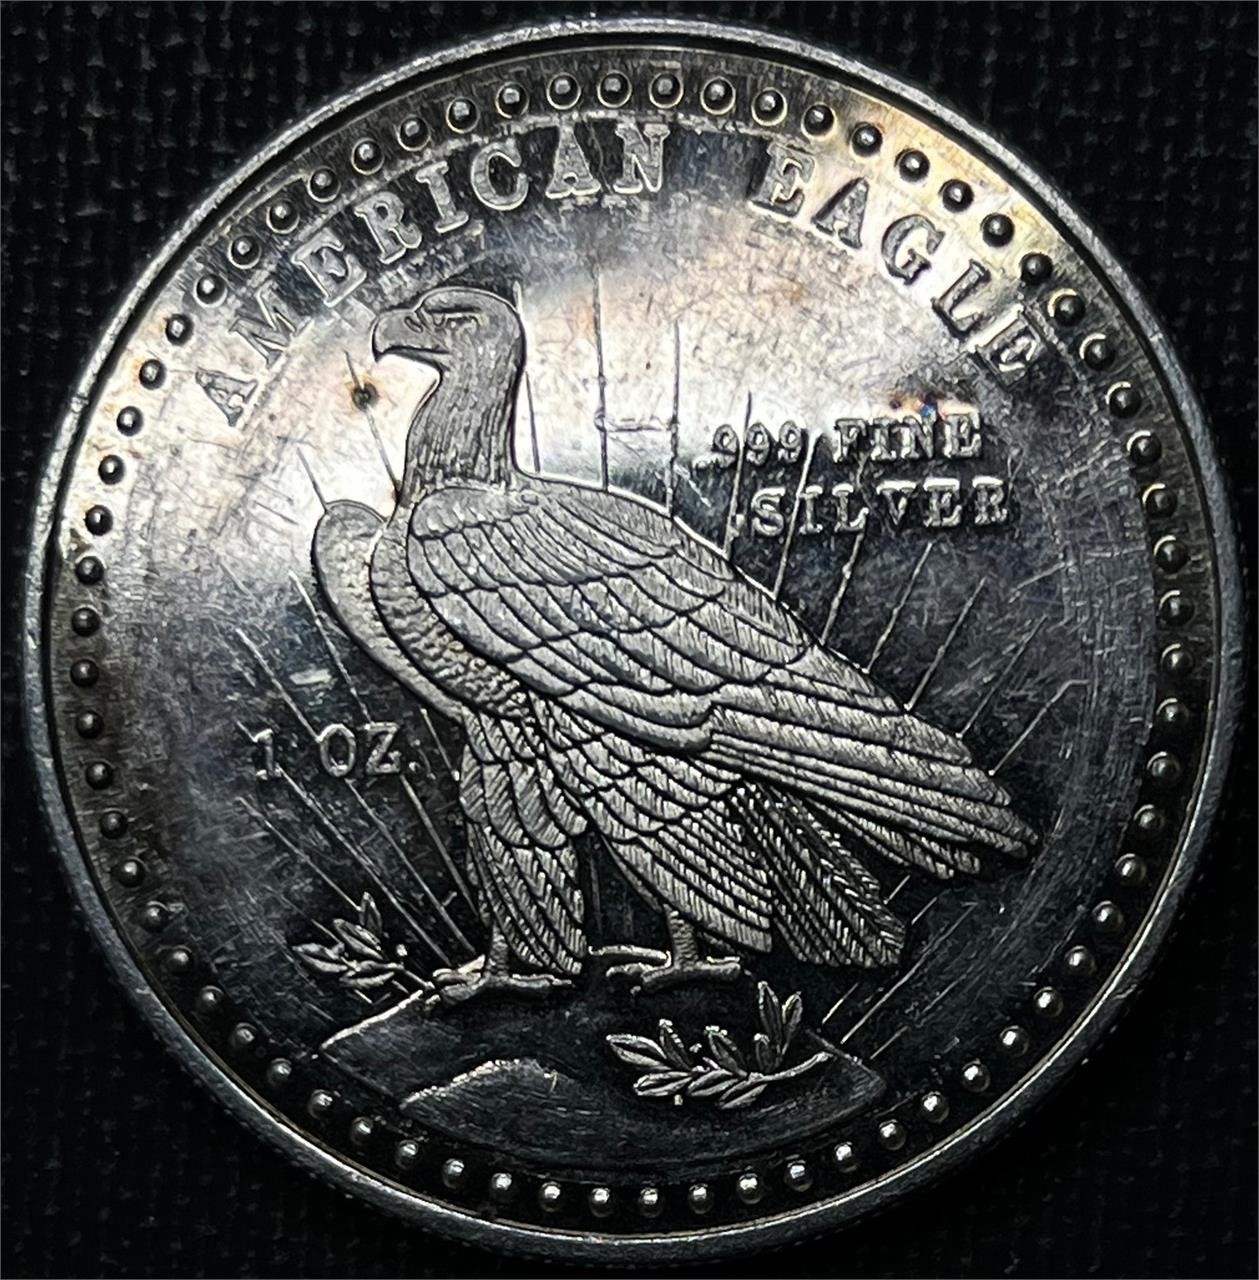 1981 World Wide Mint Silver Round